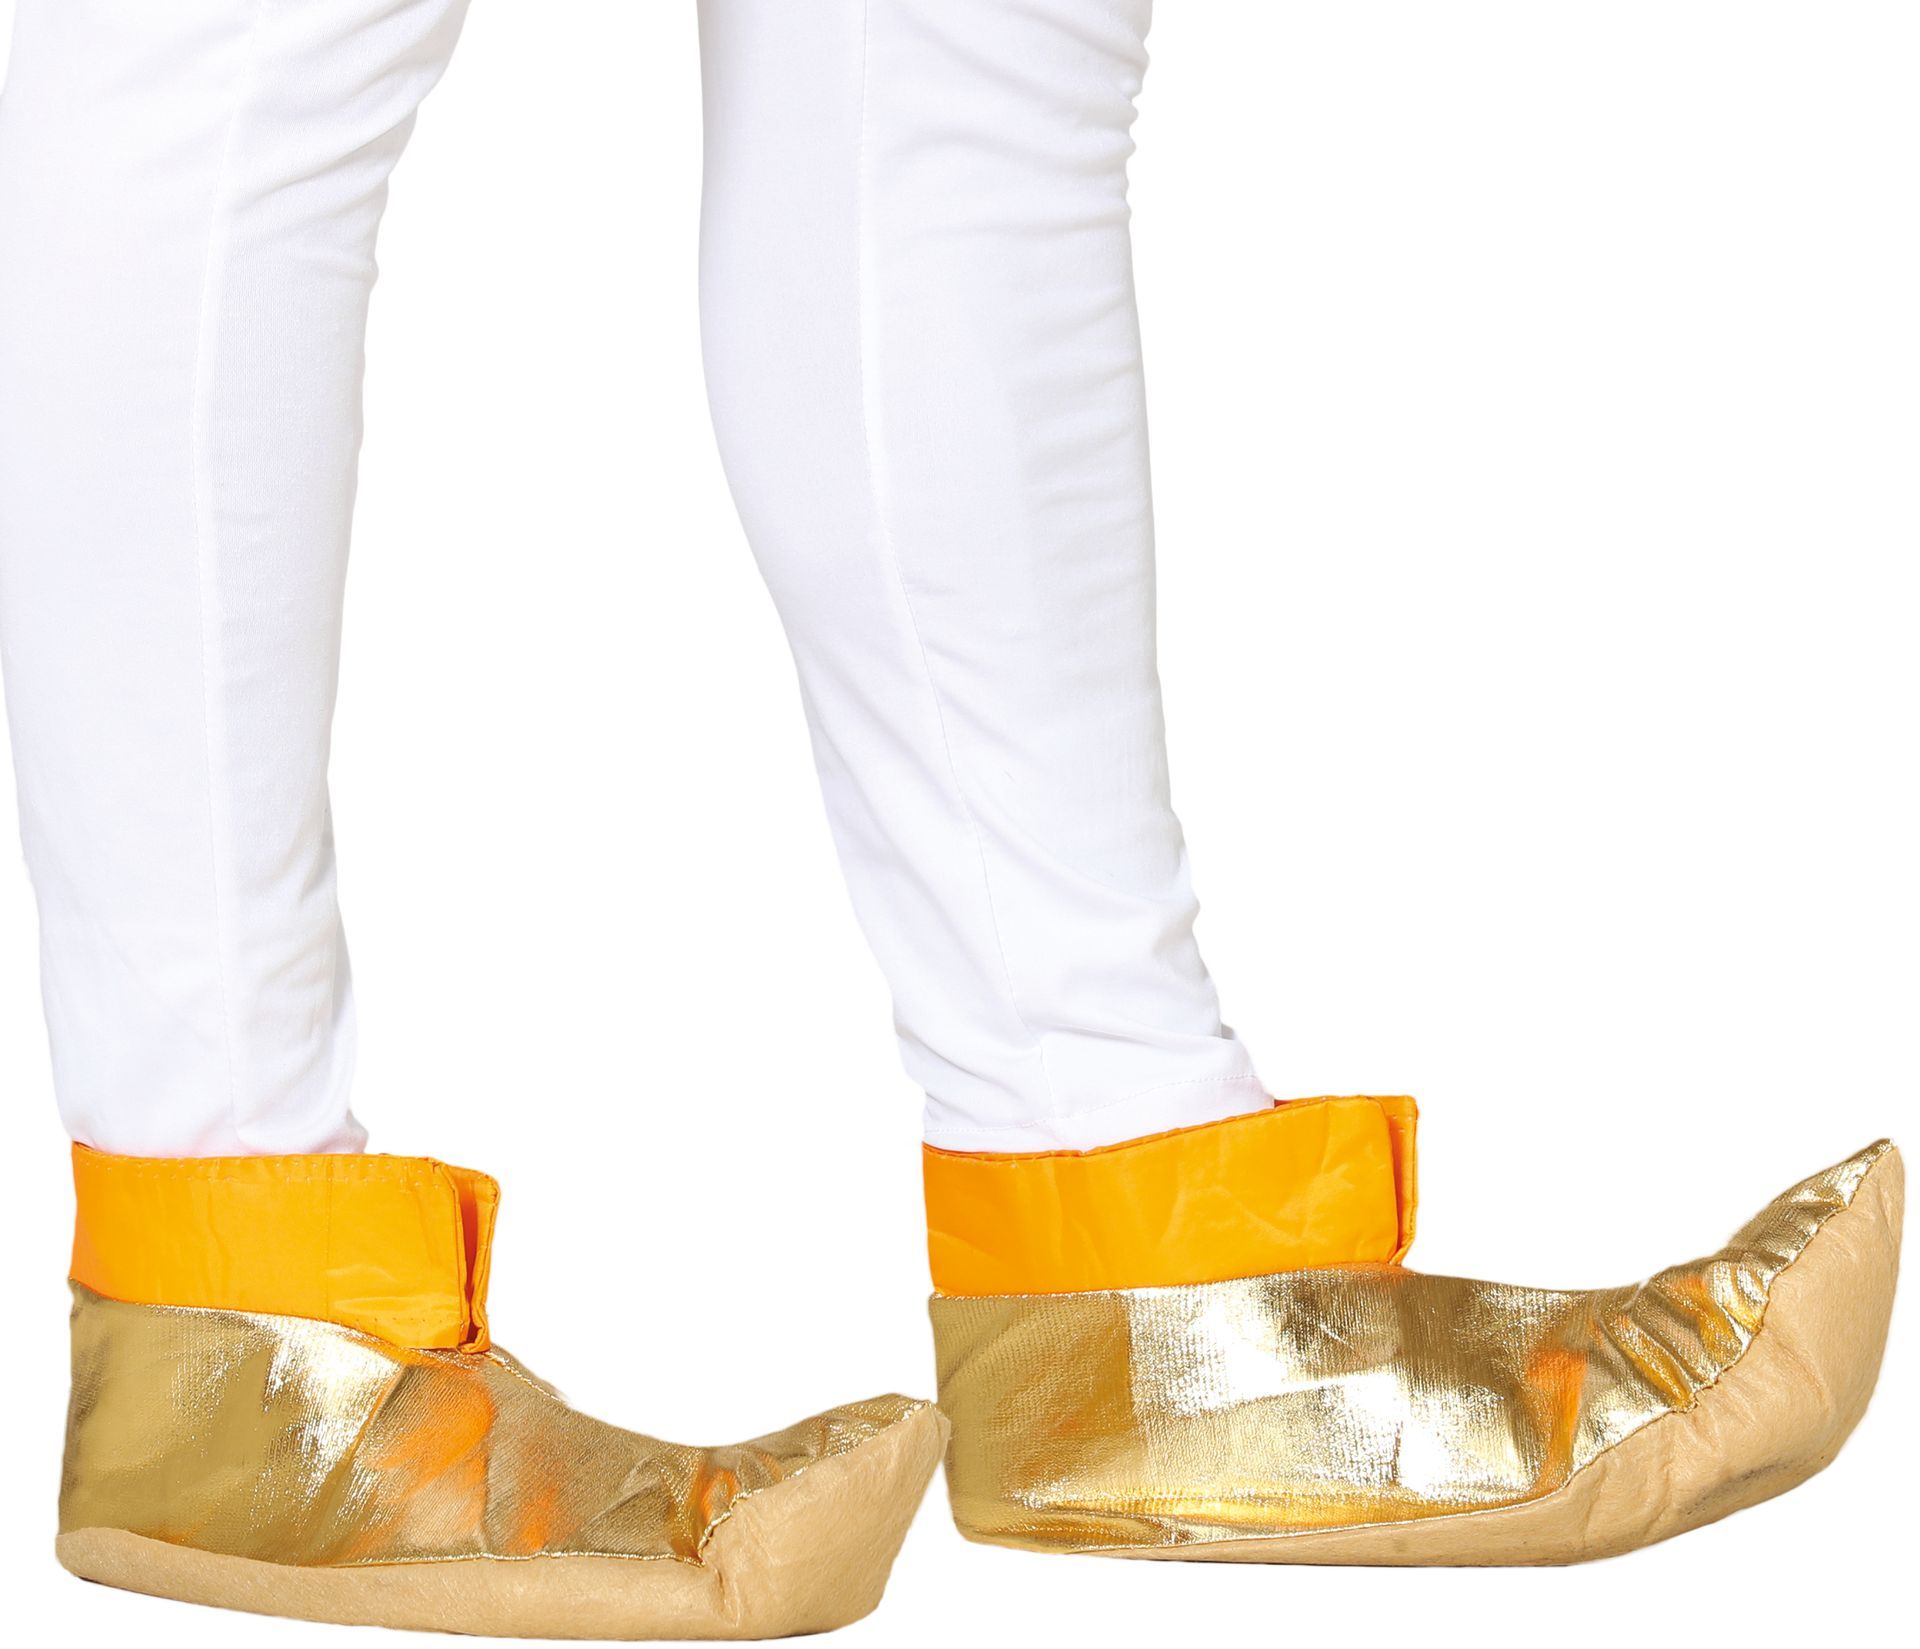 Aladin oosterse schoenen